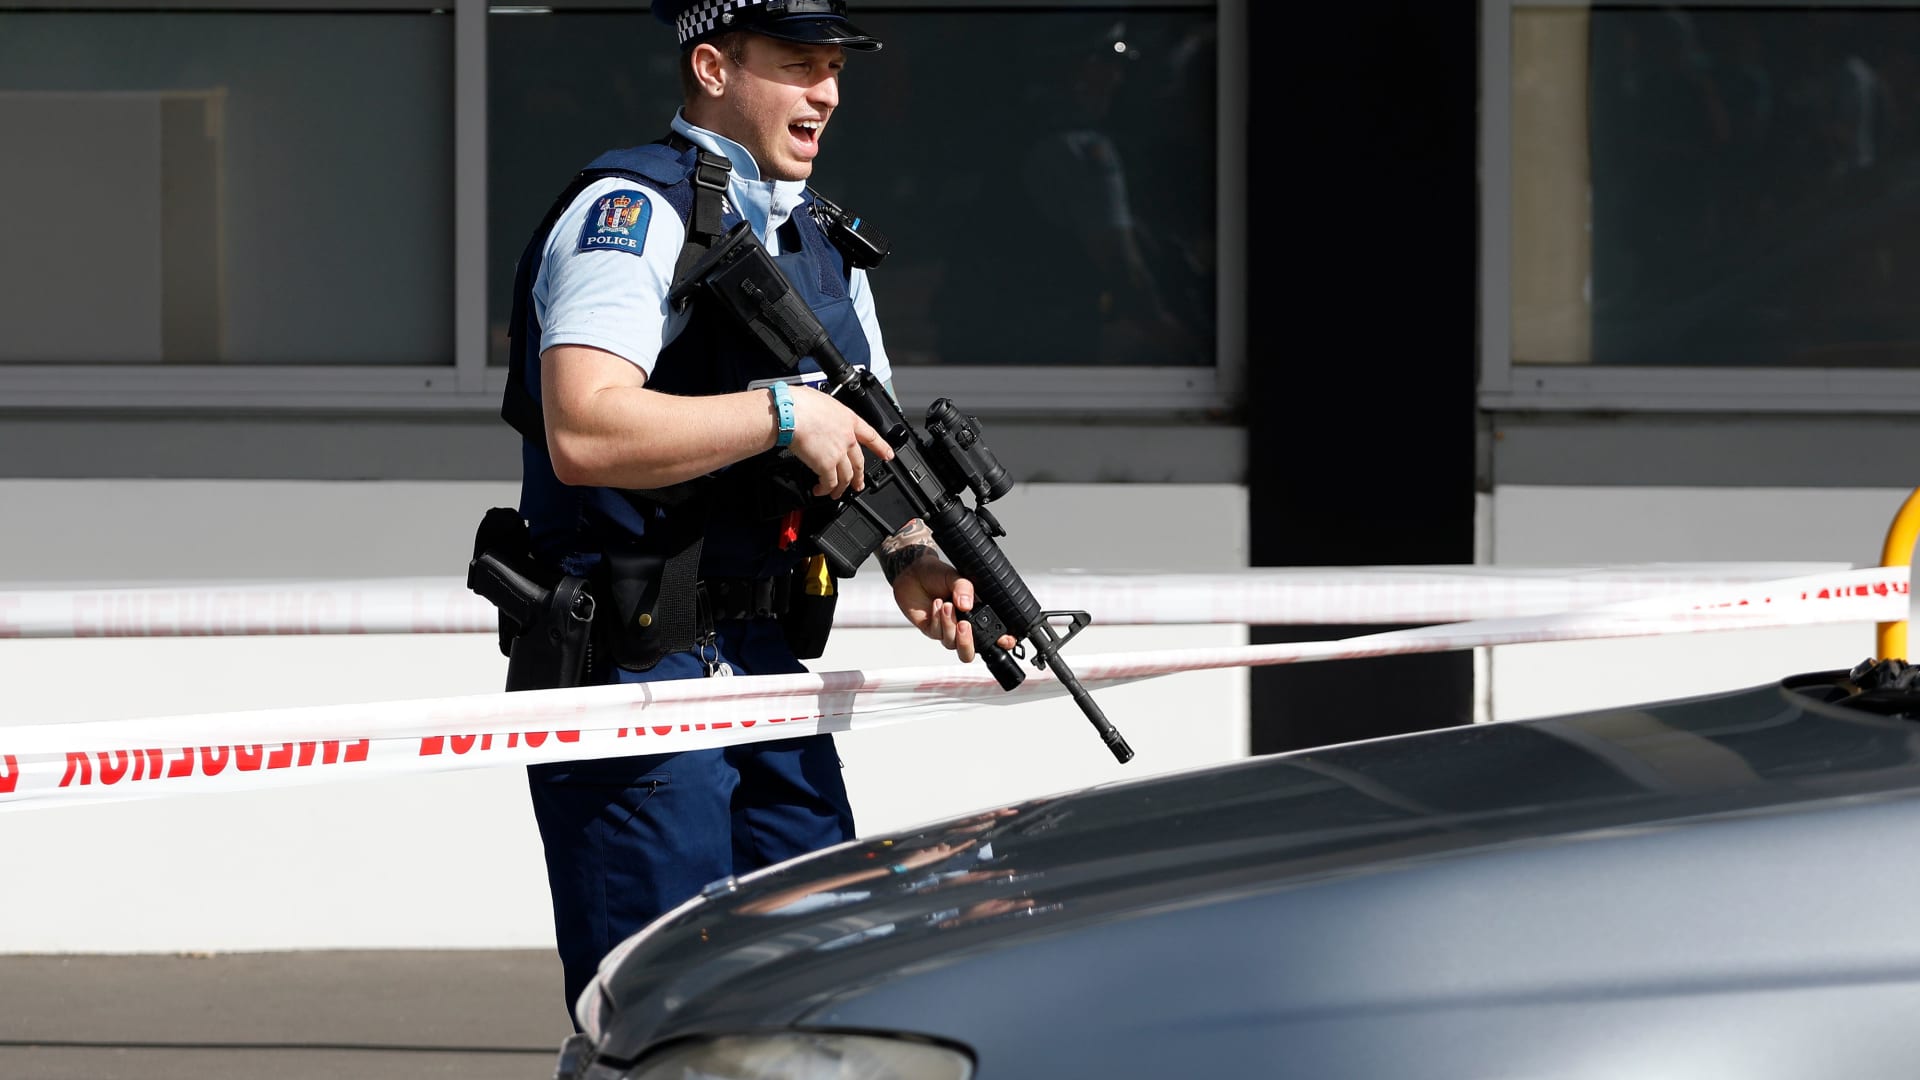 ماذا قال القاضي لمنفذ هجوم المسجدين في نيوزيلندا بأول ظهور له؟